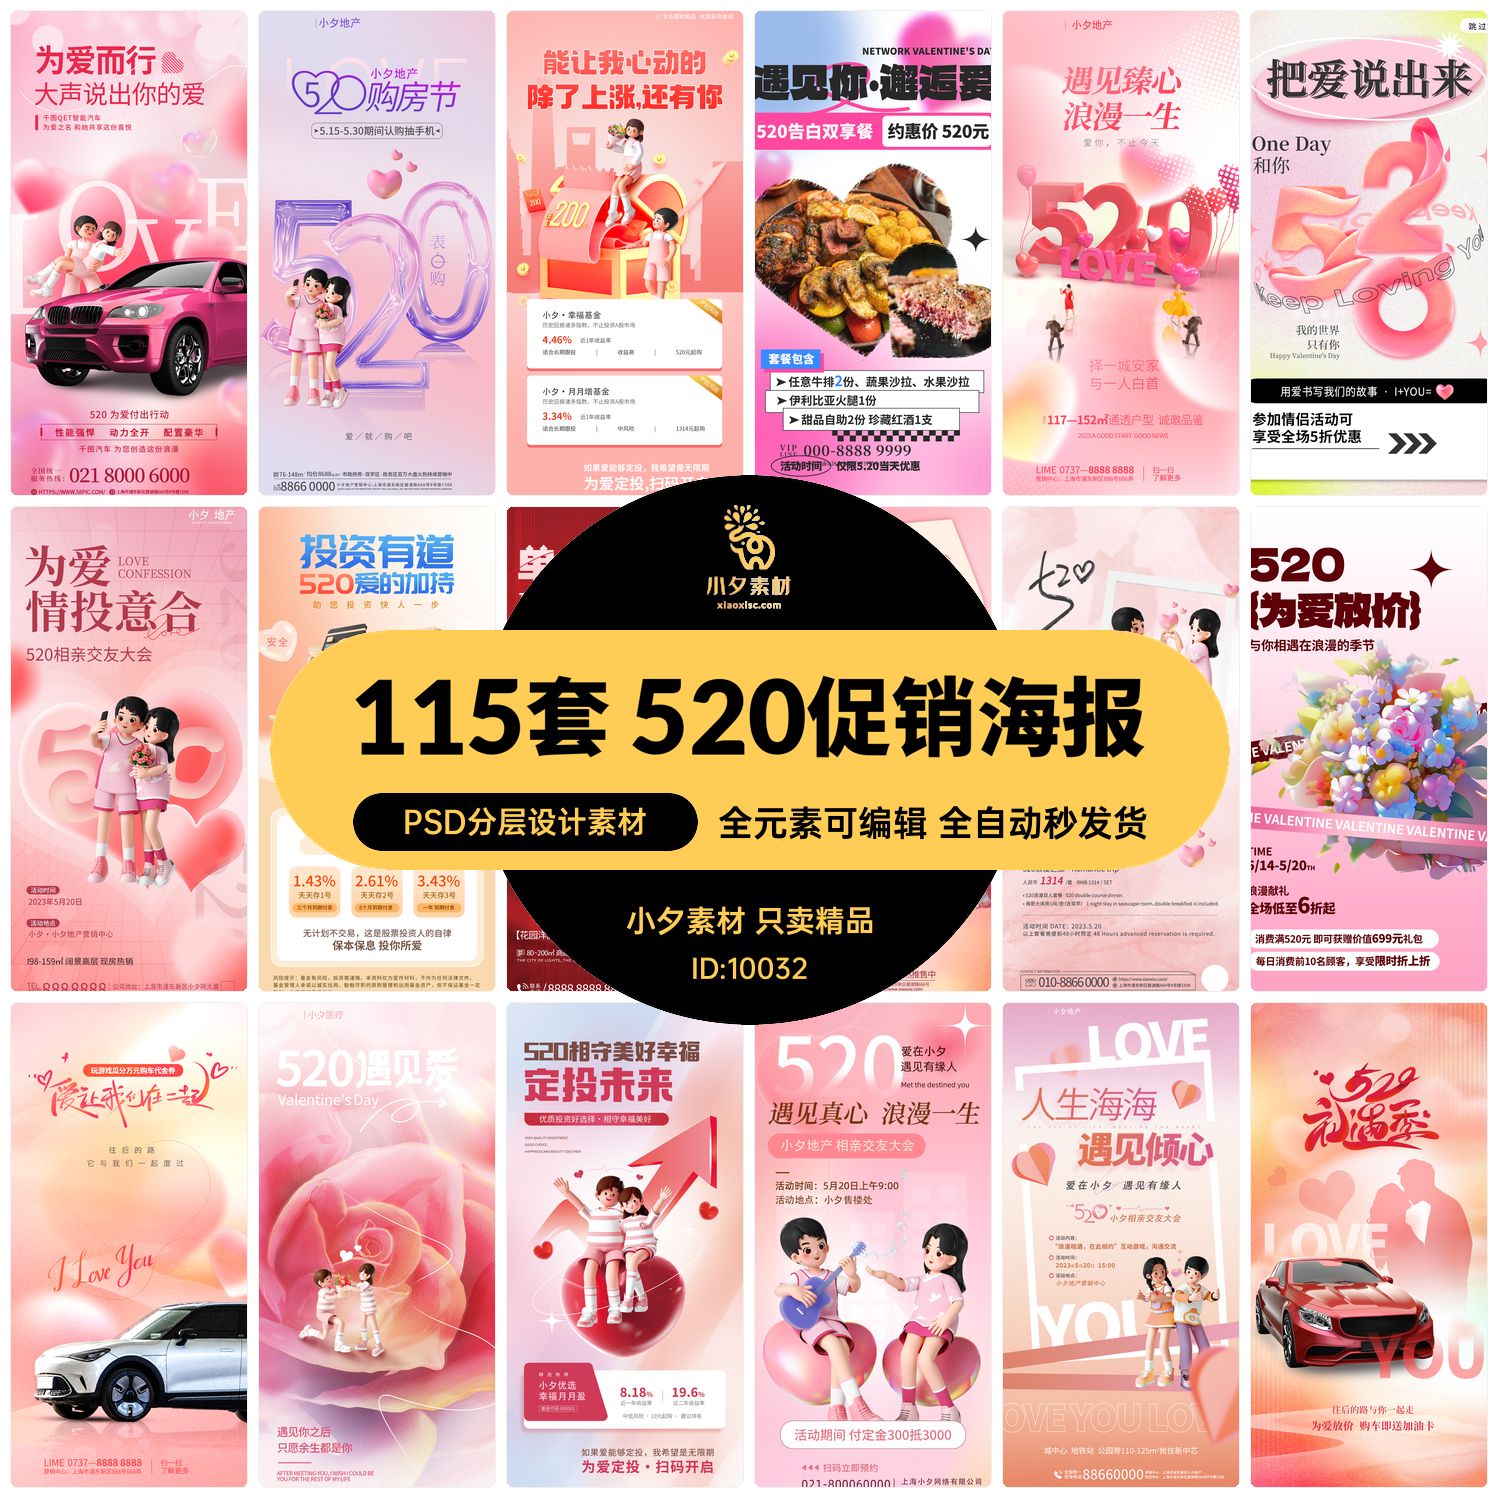 520情人节理财投资旅游美食商品活动促销宣传折扣海报PSD设计素材